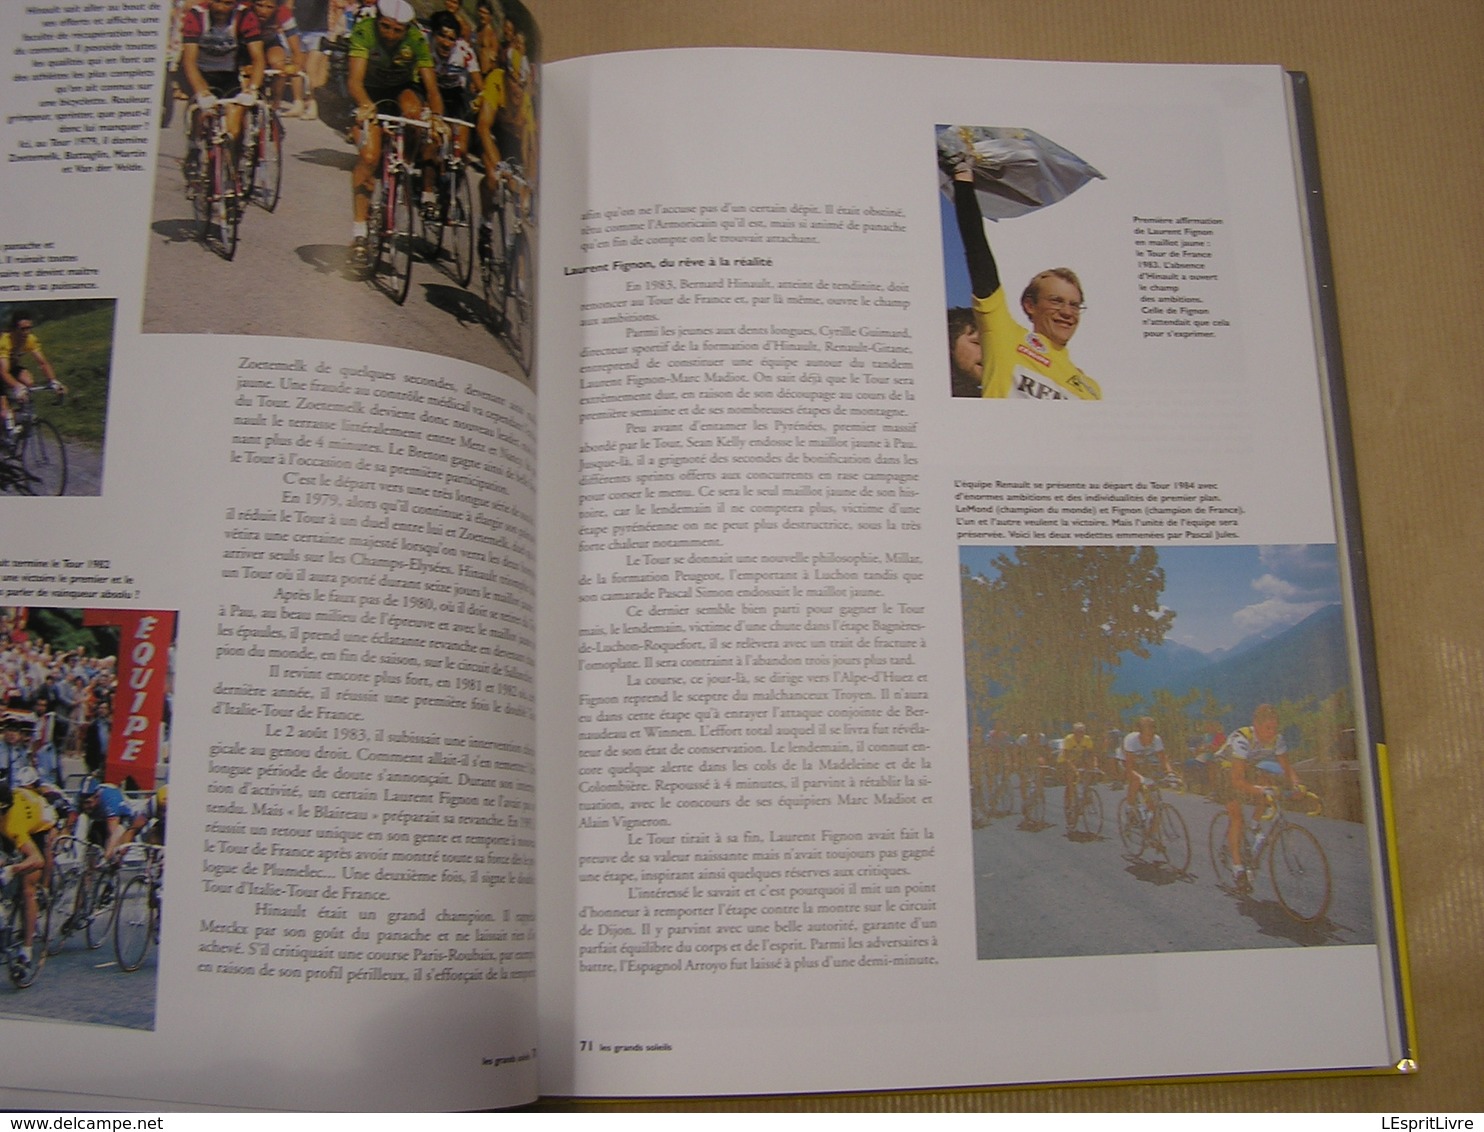 MAILLOT JAUNE J P Ollivier CYCLISME Course Cycliste Classique Tour de France Coureur Vélo Palmarès Coppi Merckx Bobet